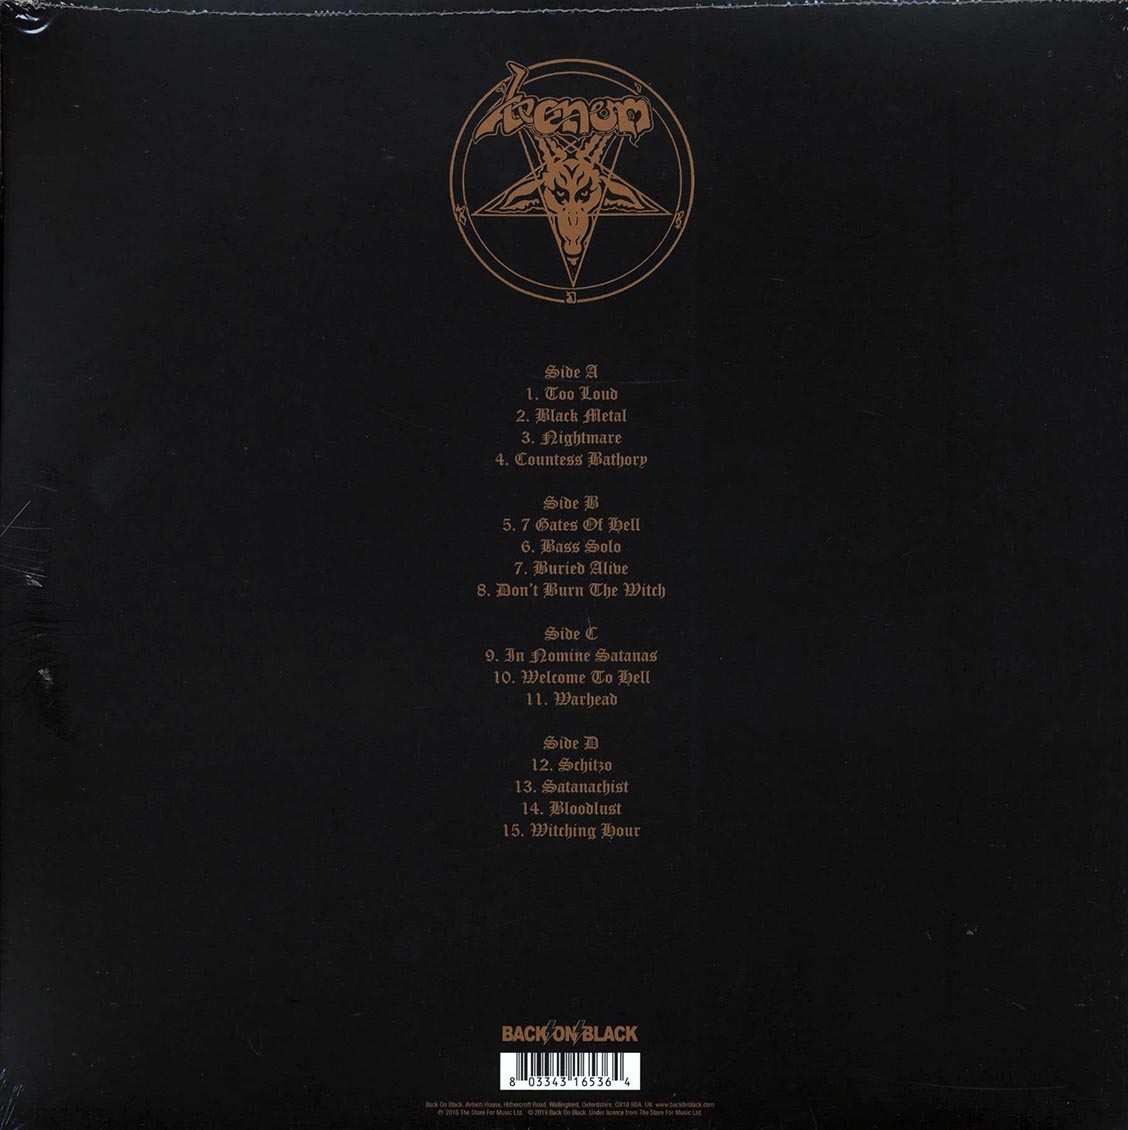 Venom - Live From The Hammersmith Odeon Theatre 1985 (ltd. ed.) (2xLP) (red vinyl) - Vinyl LP, LP